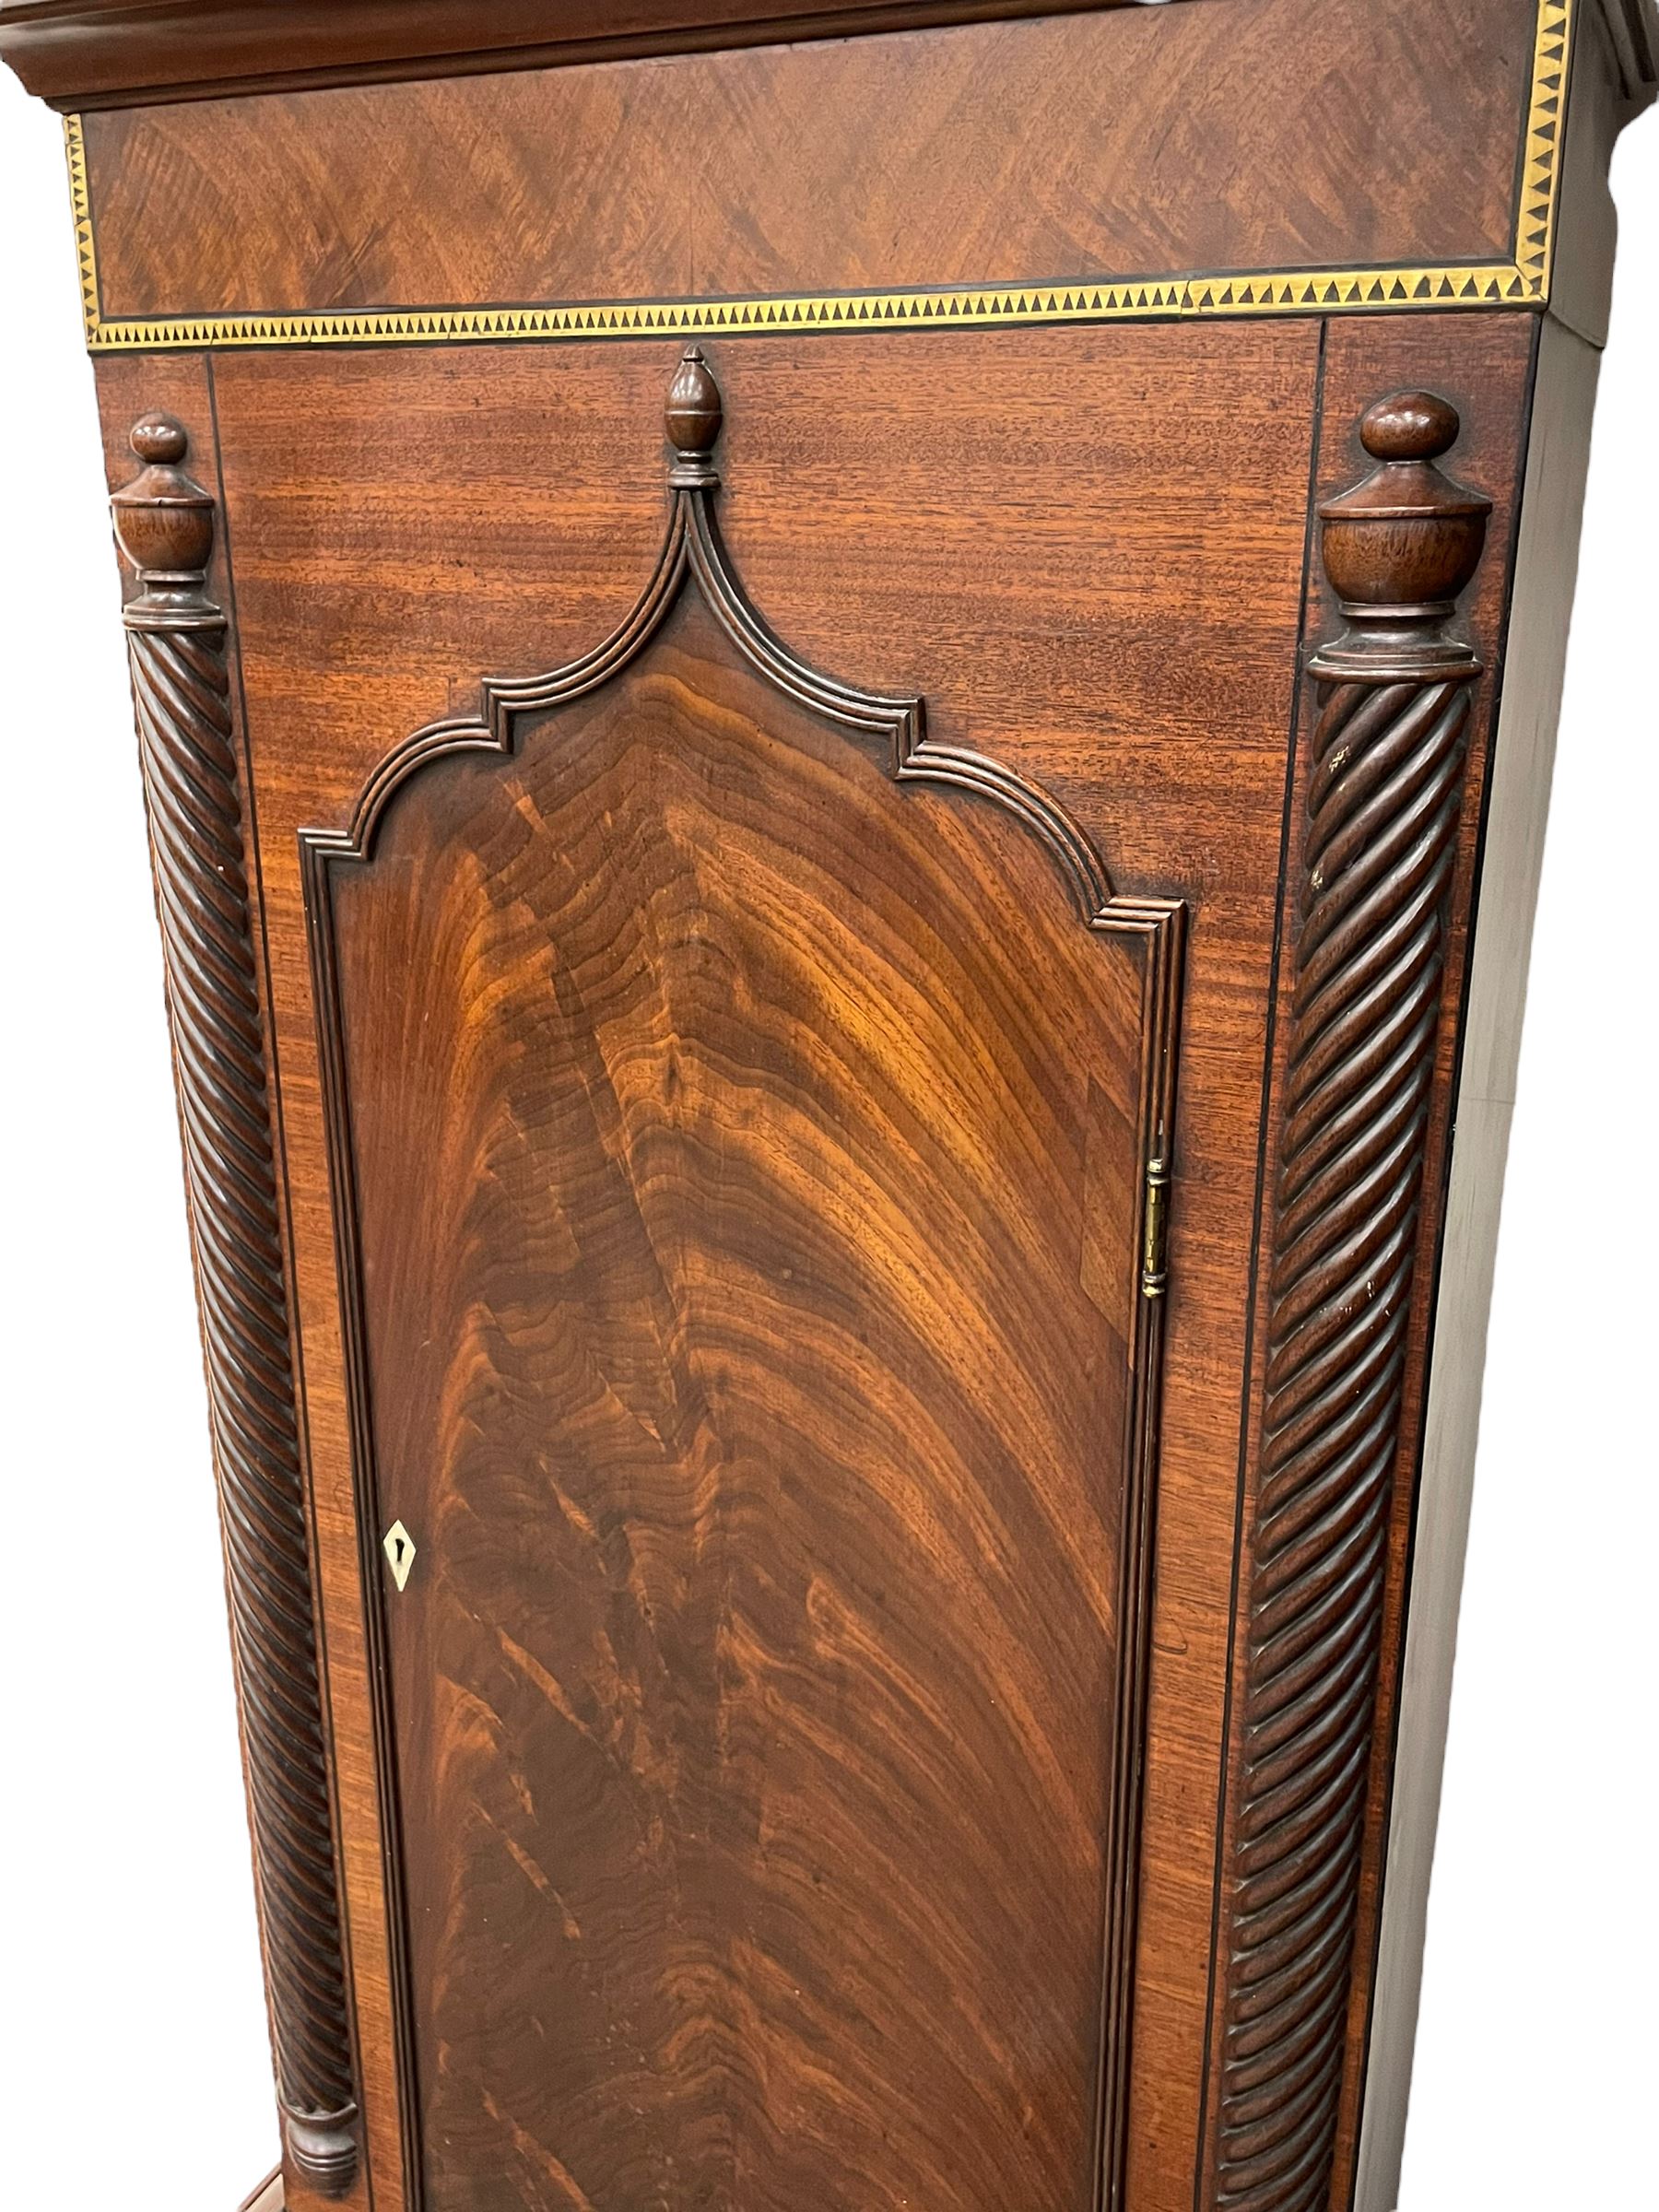 Nathaniel Dumville of Stockport - 8-day brass inlaid mahogany longcase clock c1840 - Image 8 of 15